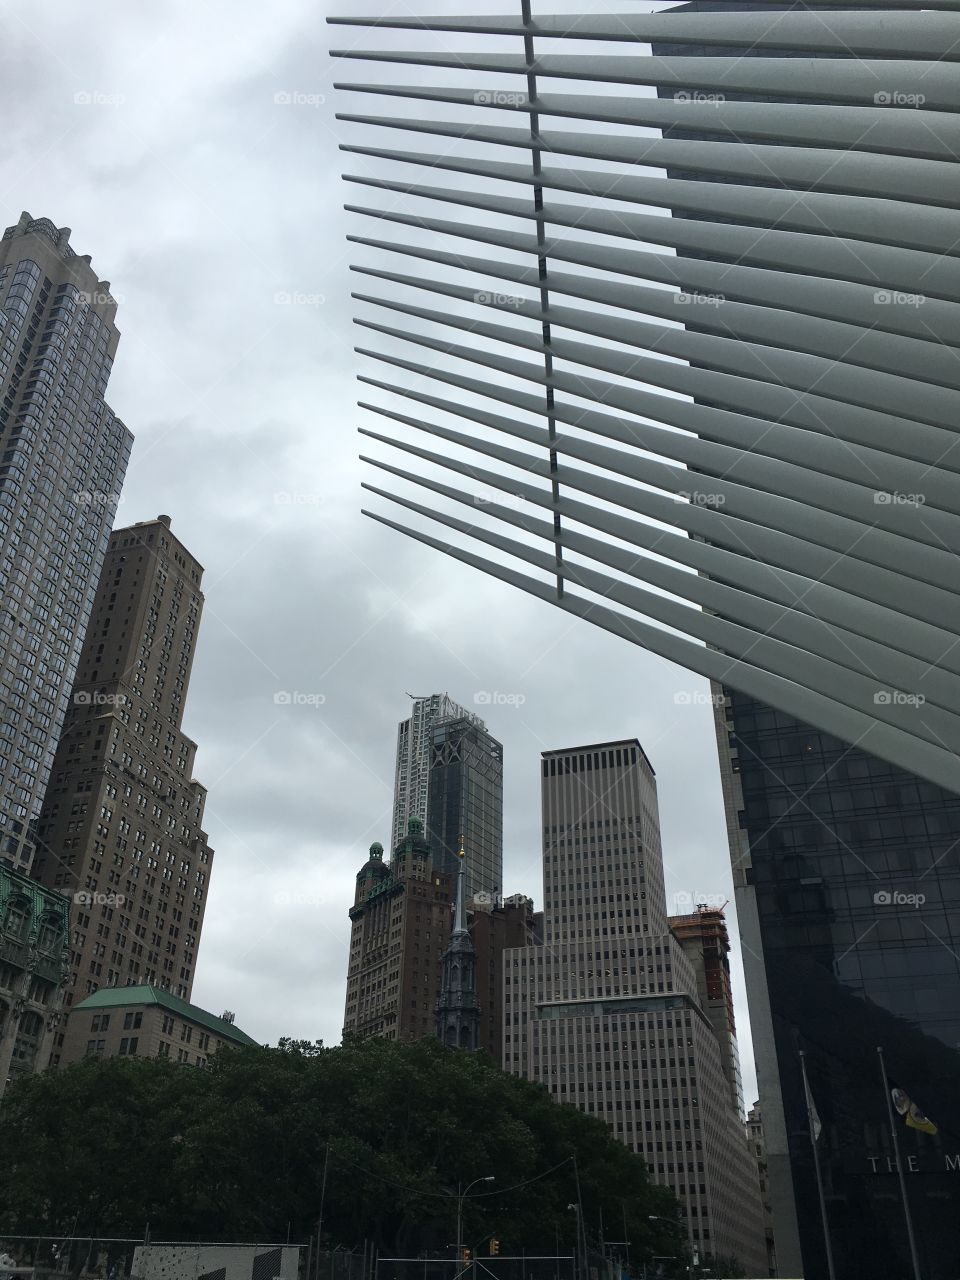 NYC, 9/11 Memorial site